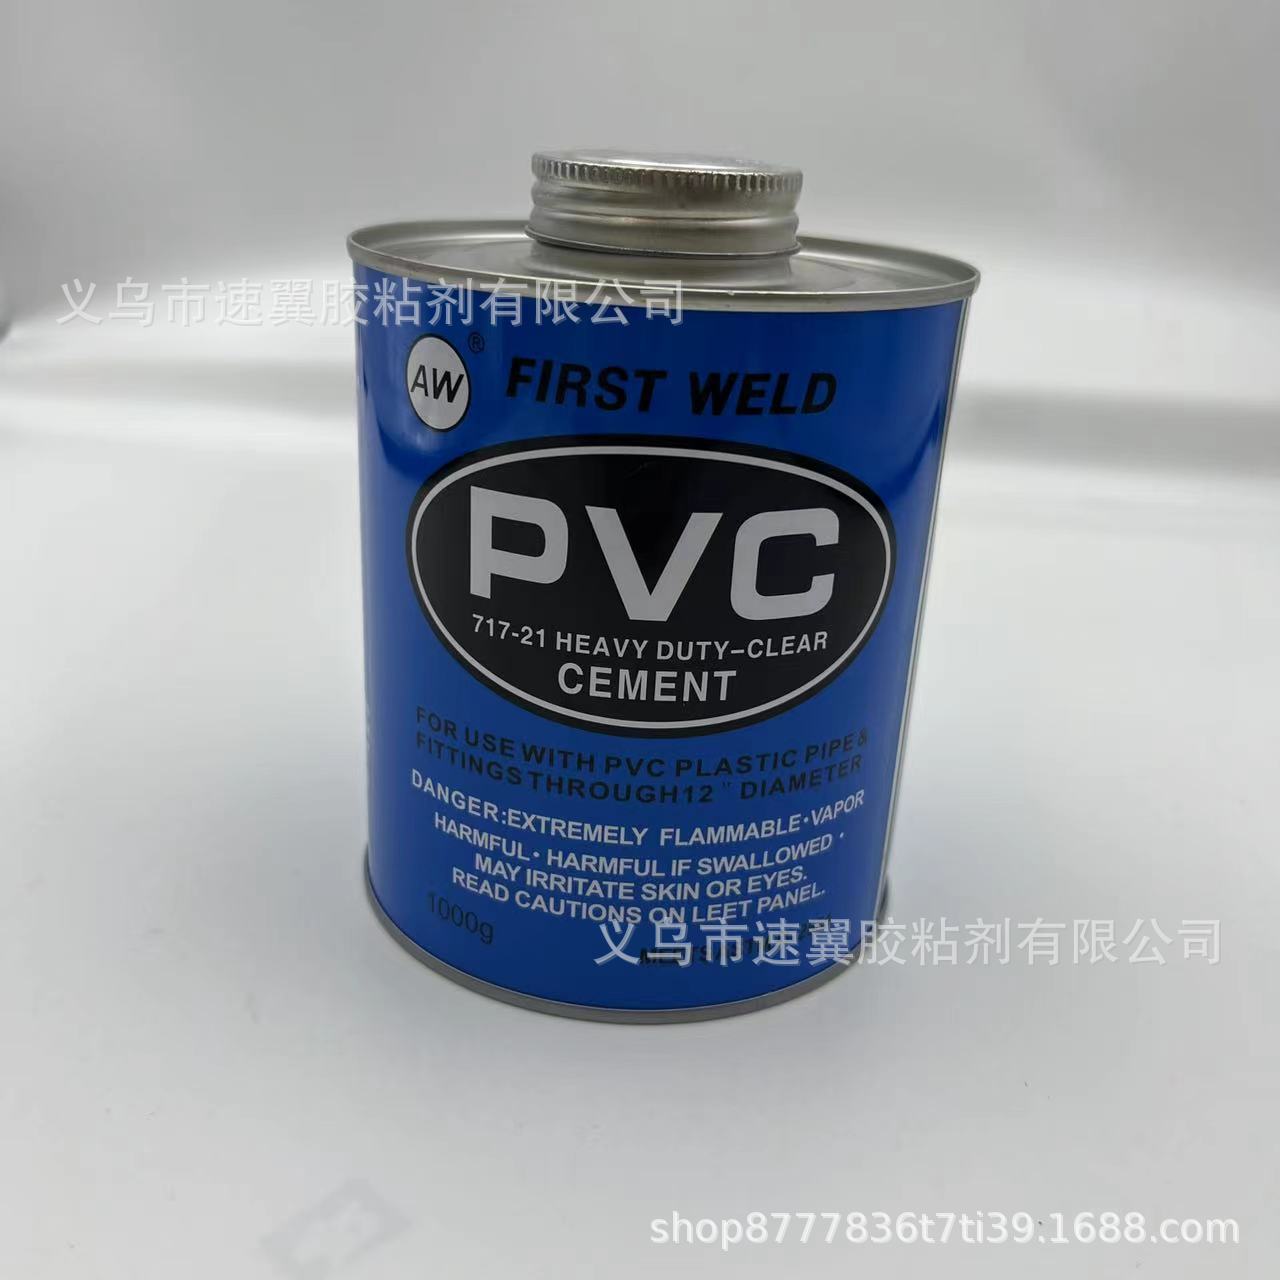 英文版铁罐PVC胶 PVC PPR塑料水管专用胶水出口外贸胶水厂家直销